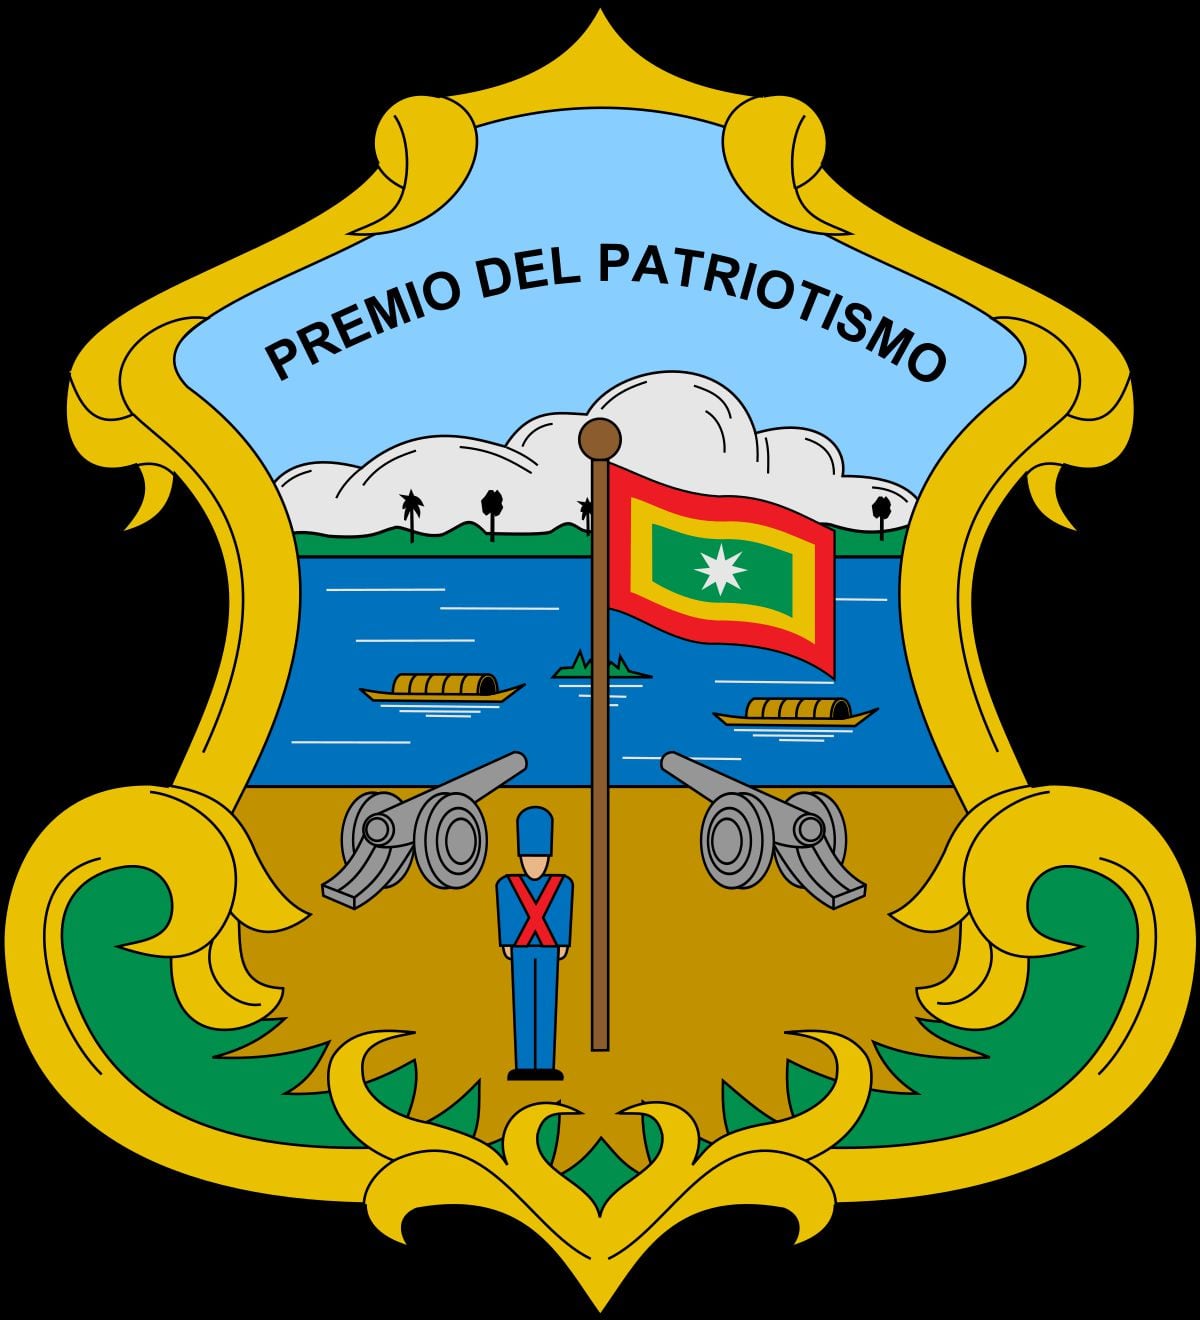 Cumpleaños Barranquilla: este es el significado de la bandera y el escudo de la ciudad